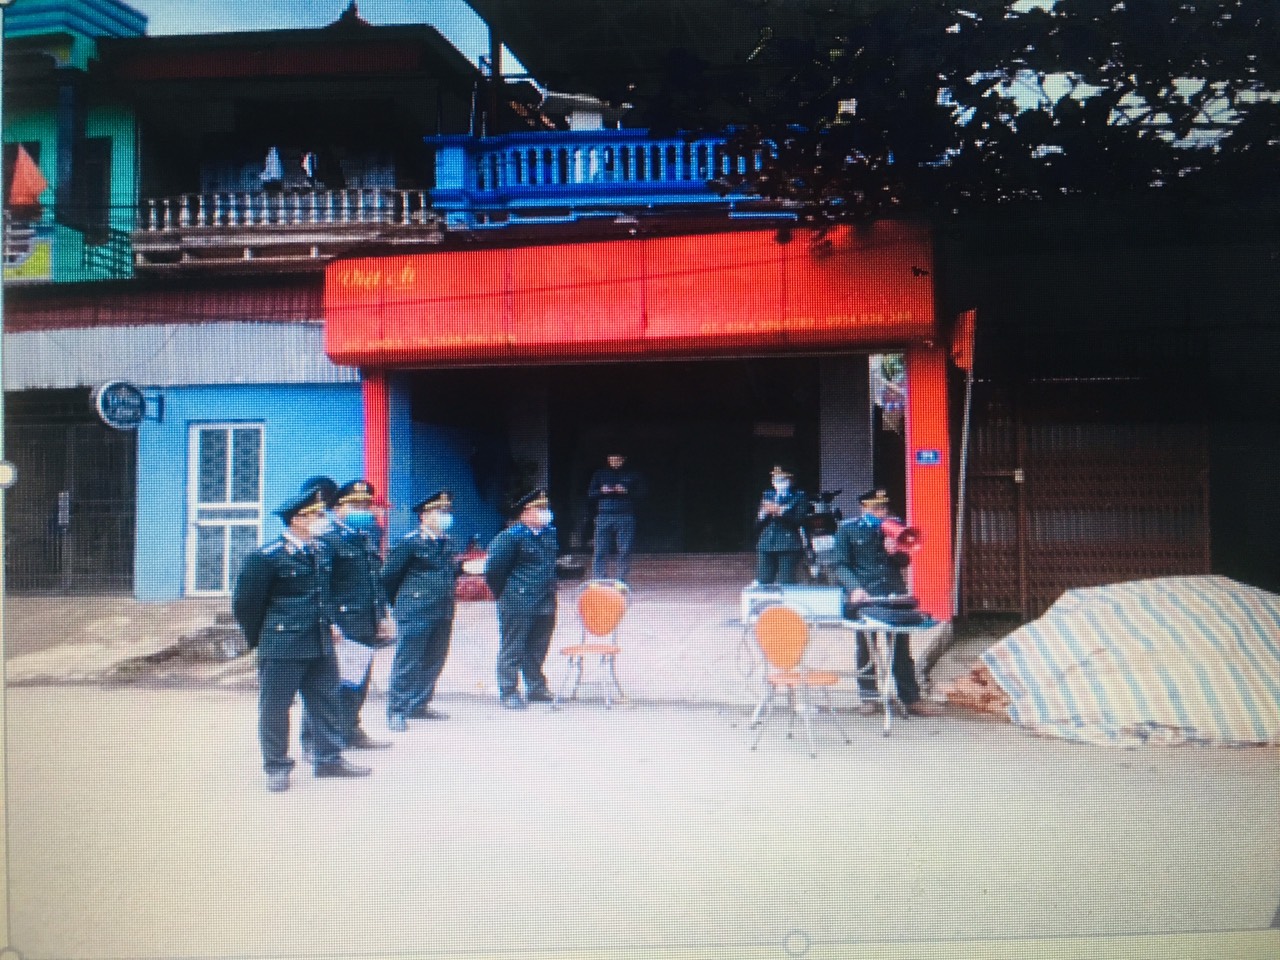 Chi cục Thi hành án dân sự huyện Phù Yên tổ chức cưỡng chế thi hành án dân sự